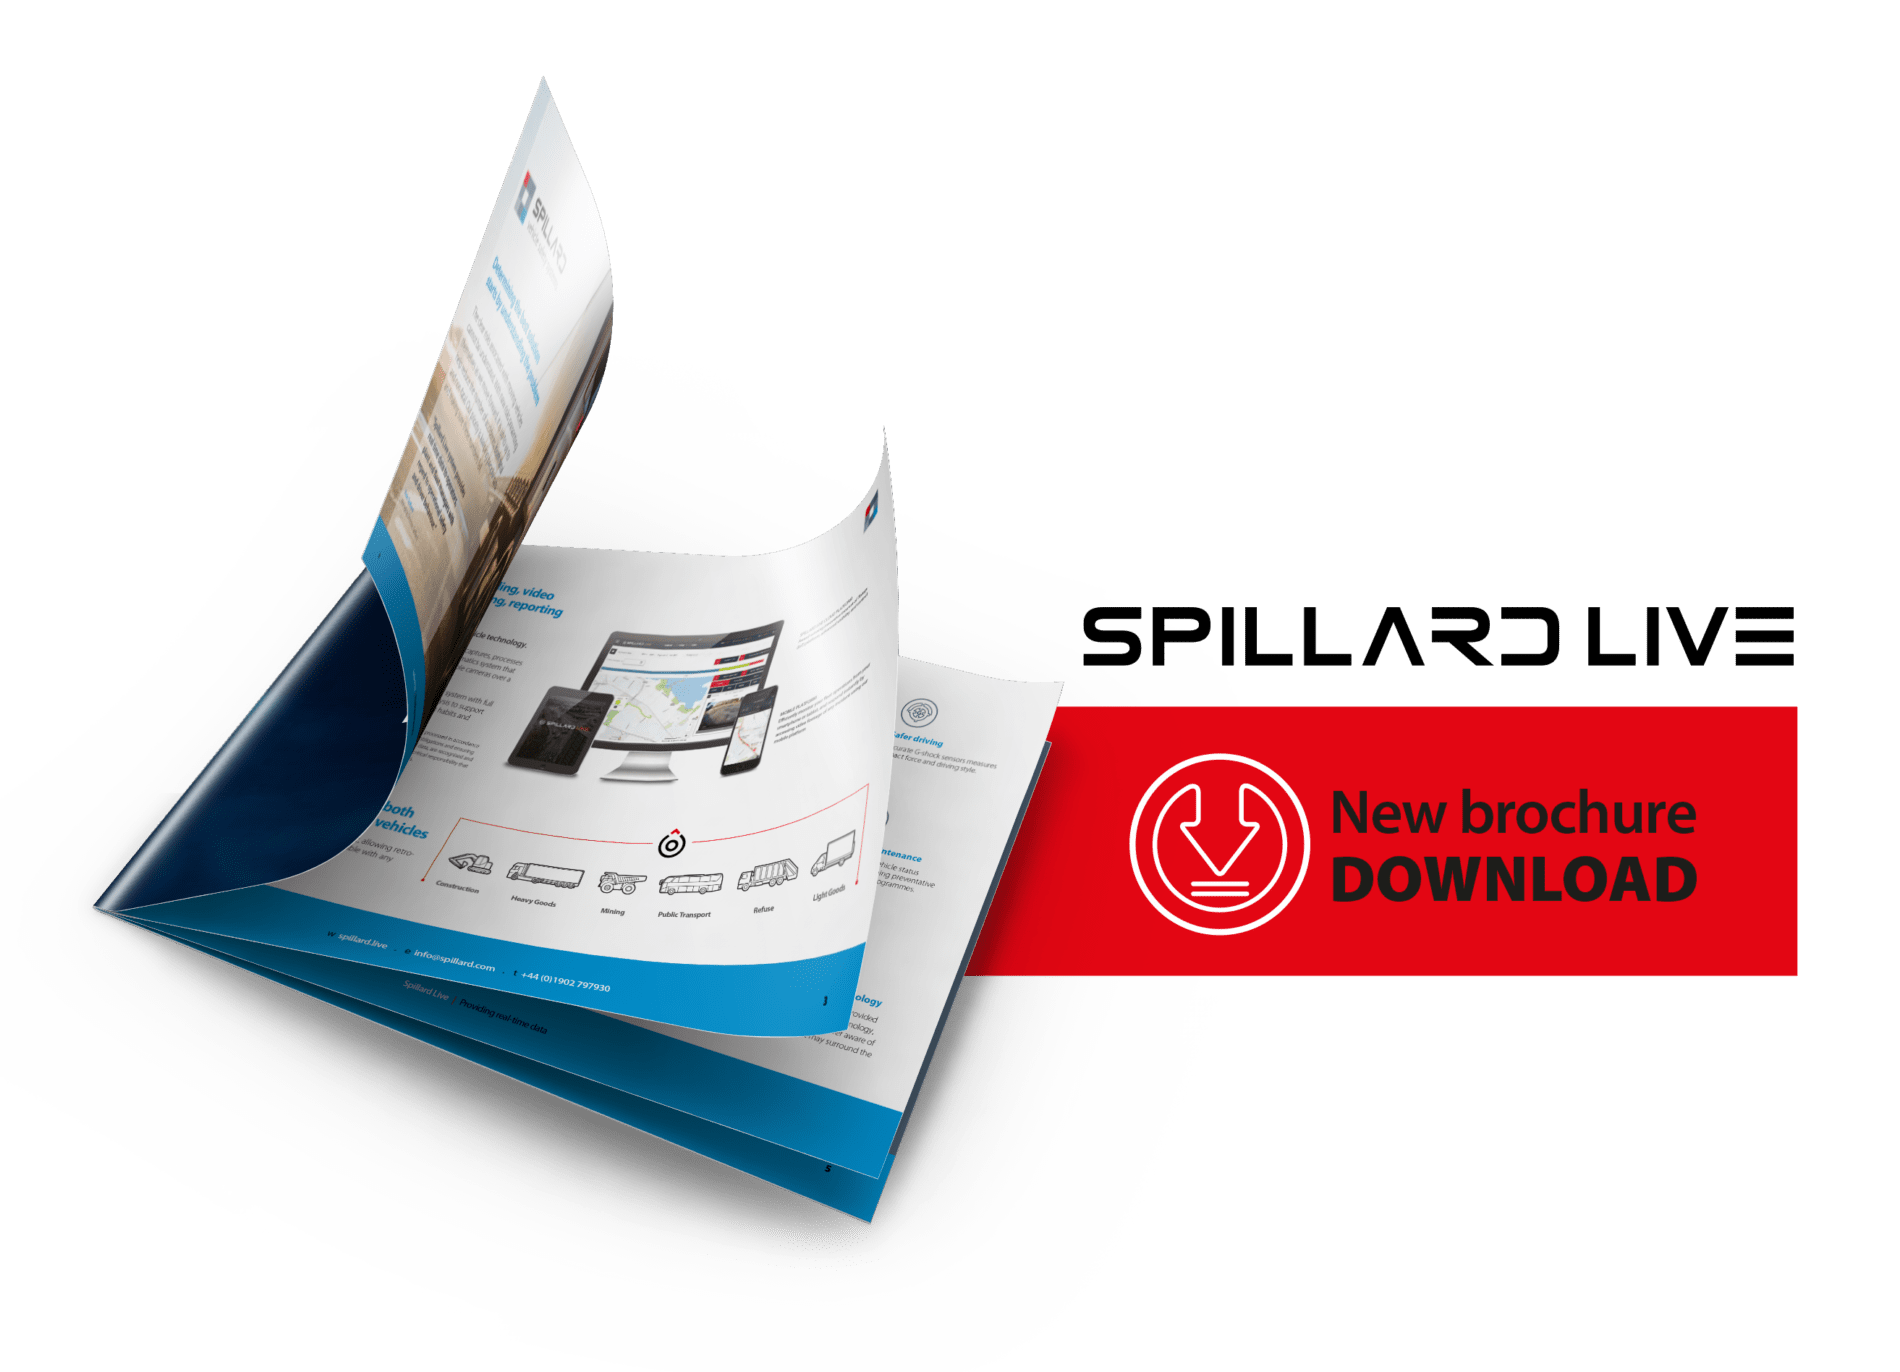 Fleet Management - A4 Spillard LIVE brochure visual